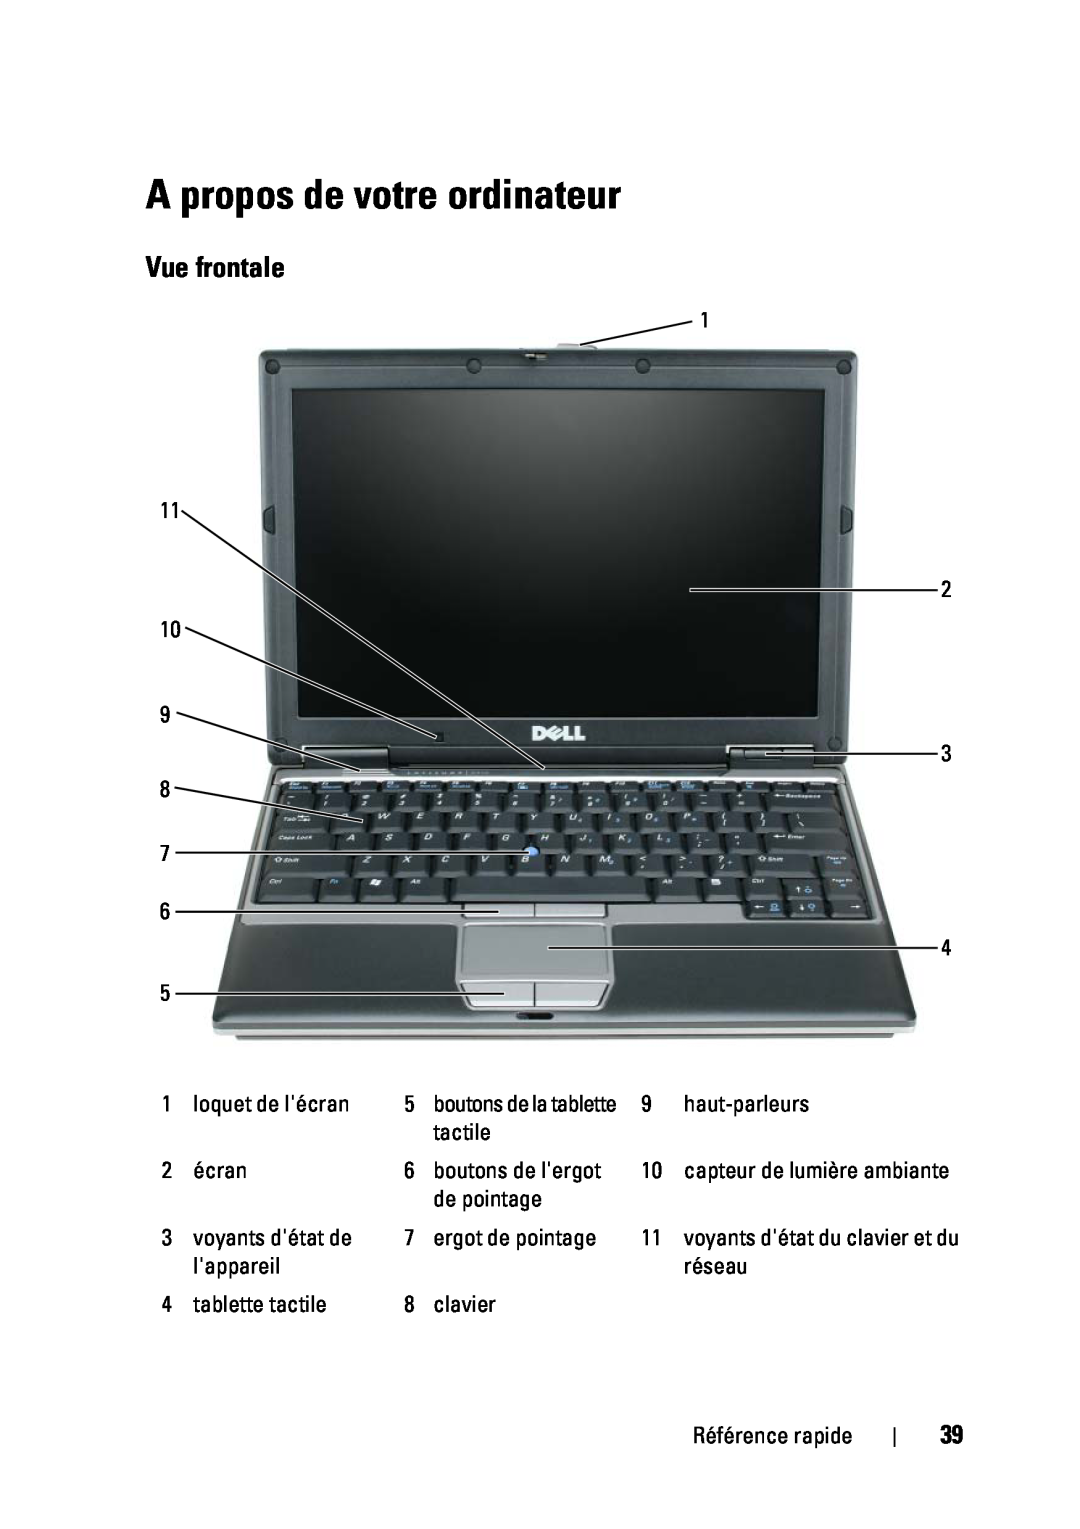 Dell D430 manual A propos de votre ordinateur, Vue frontale 